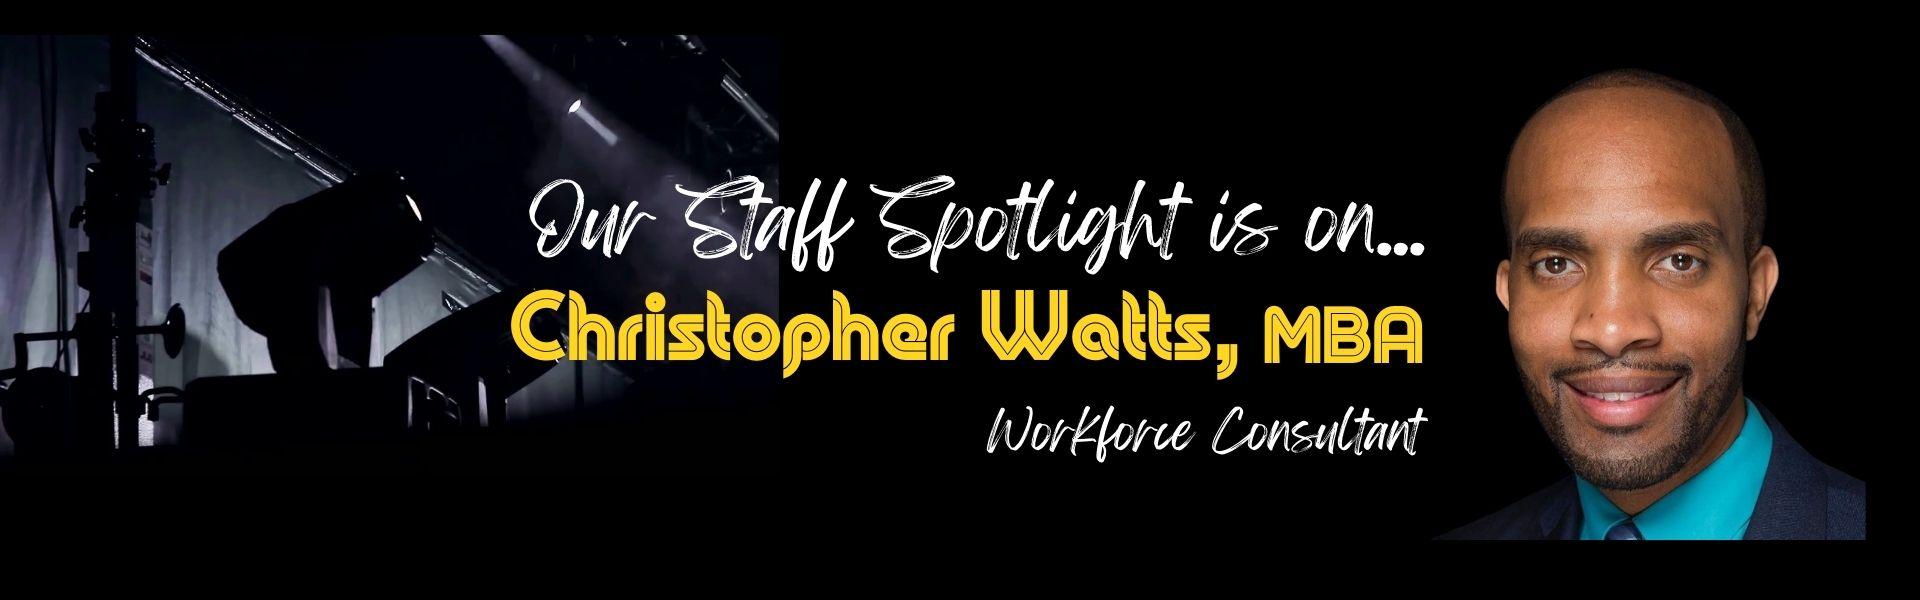 Staff Spotlight is on Christopher Watts, MBA